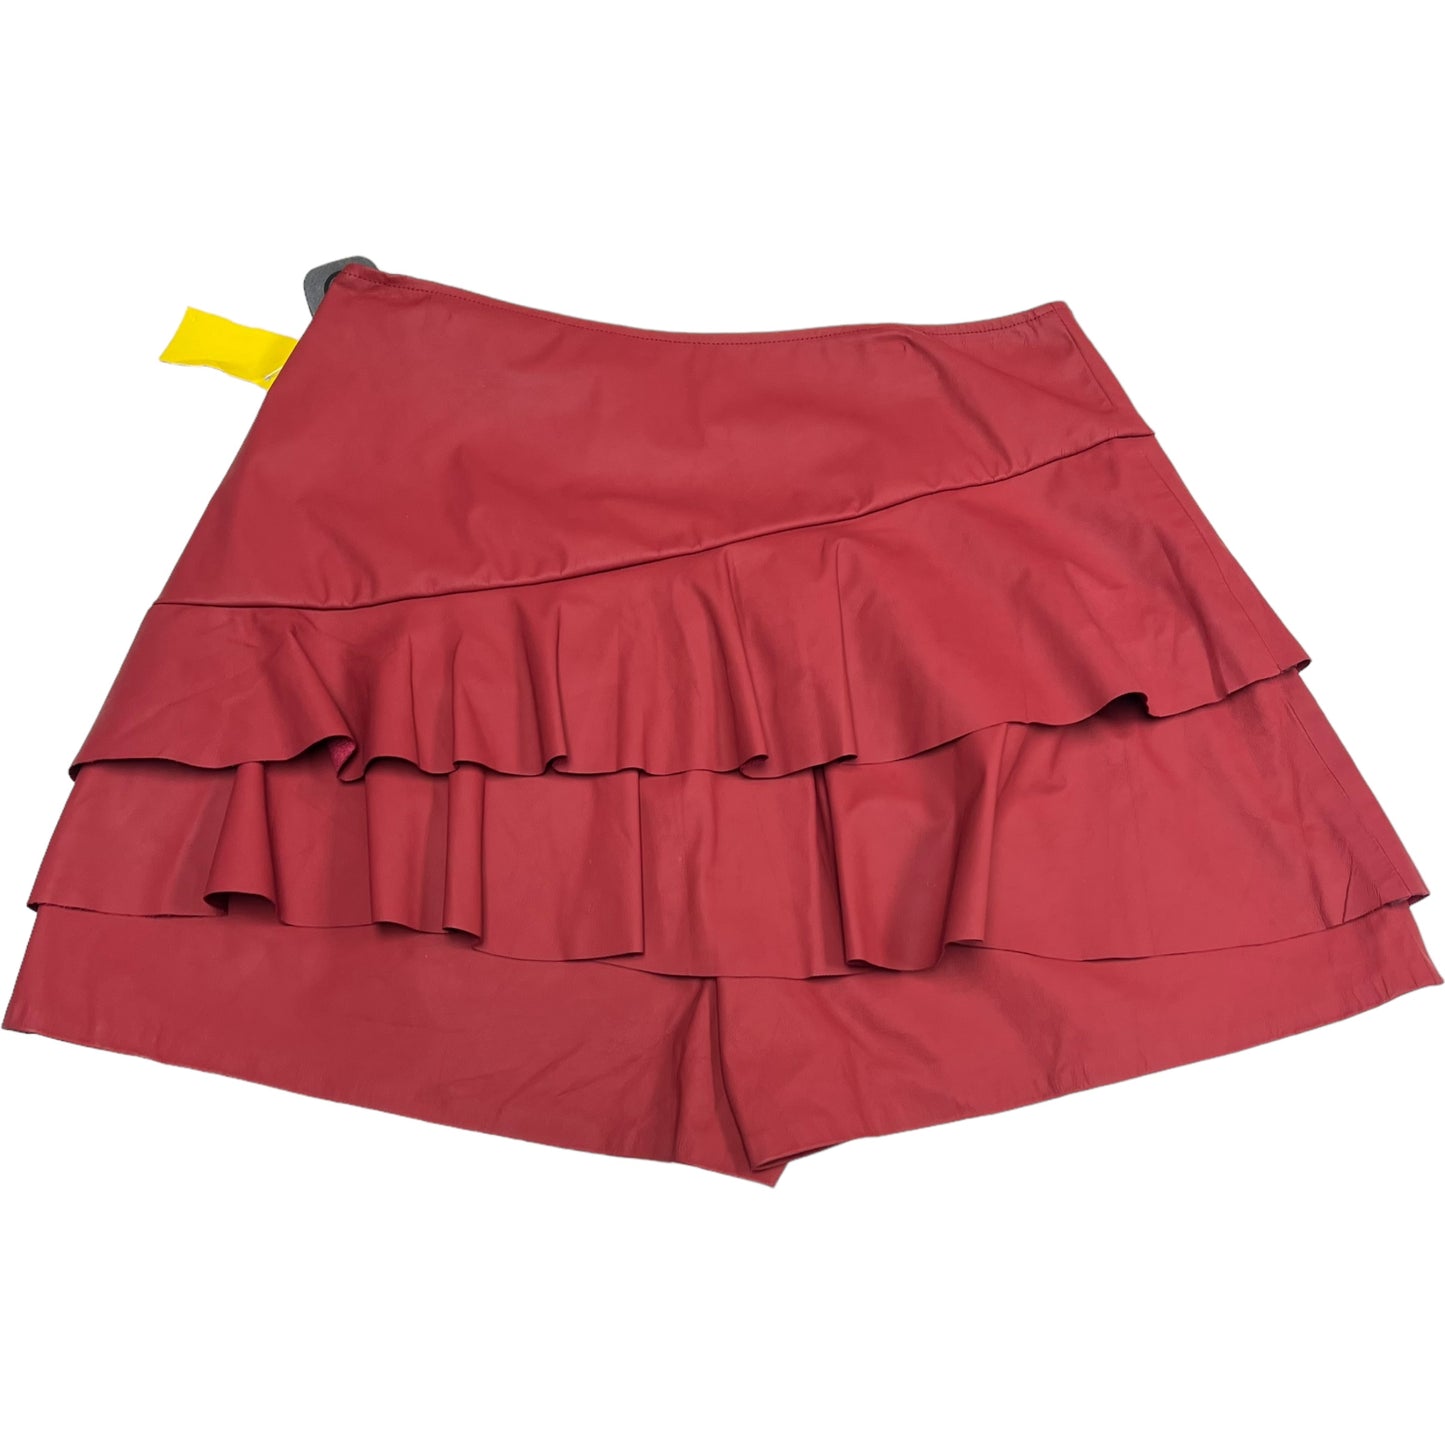 Shorts By Vestique  Size: L